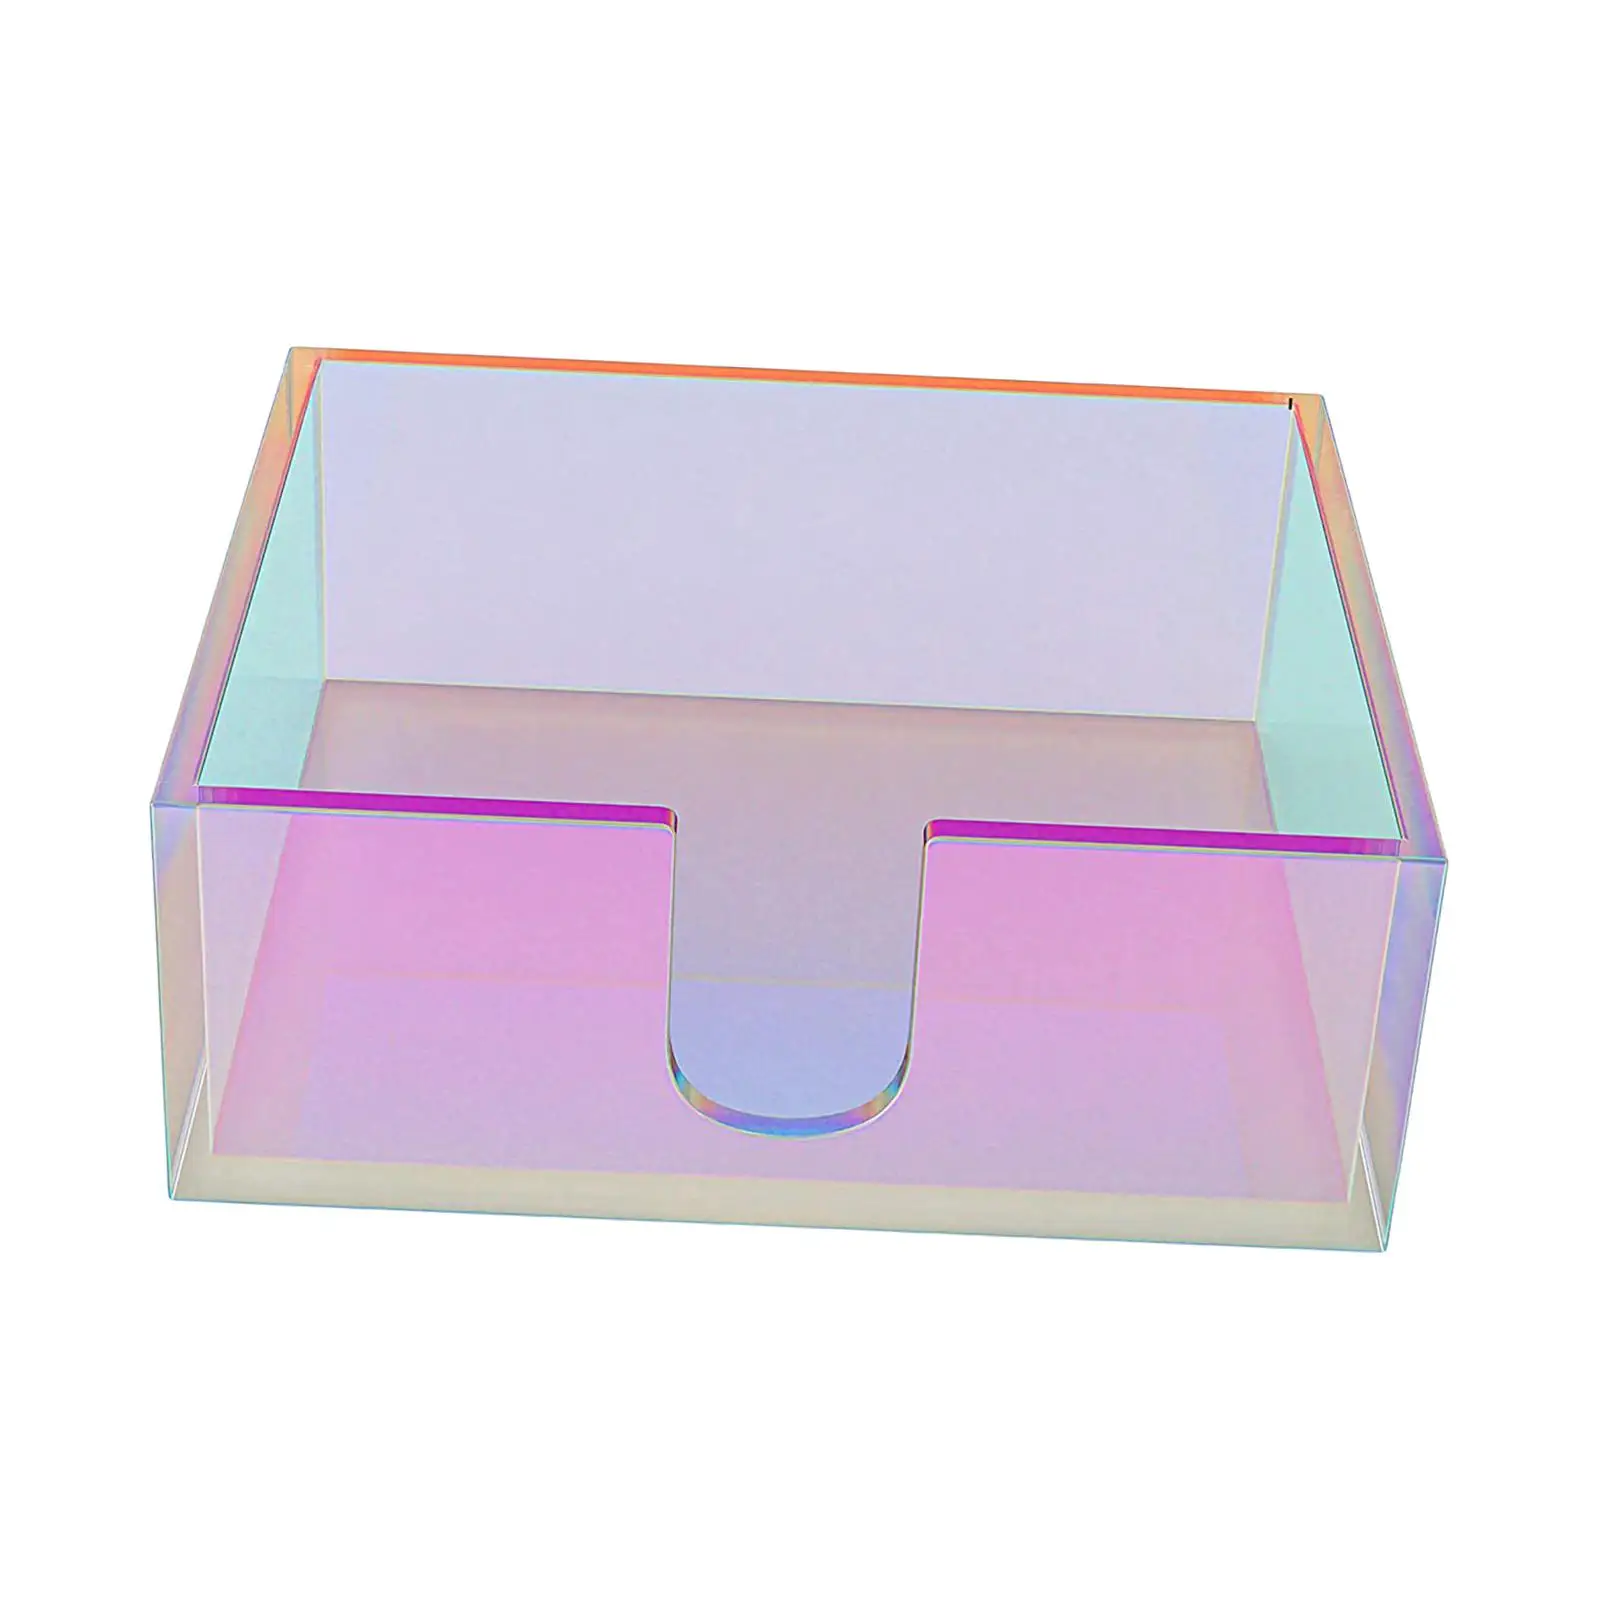 Elegant Paper Napkin Holder Case Iridescent Durable Creative Dispenser Container